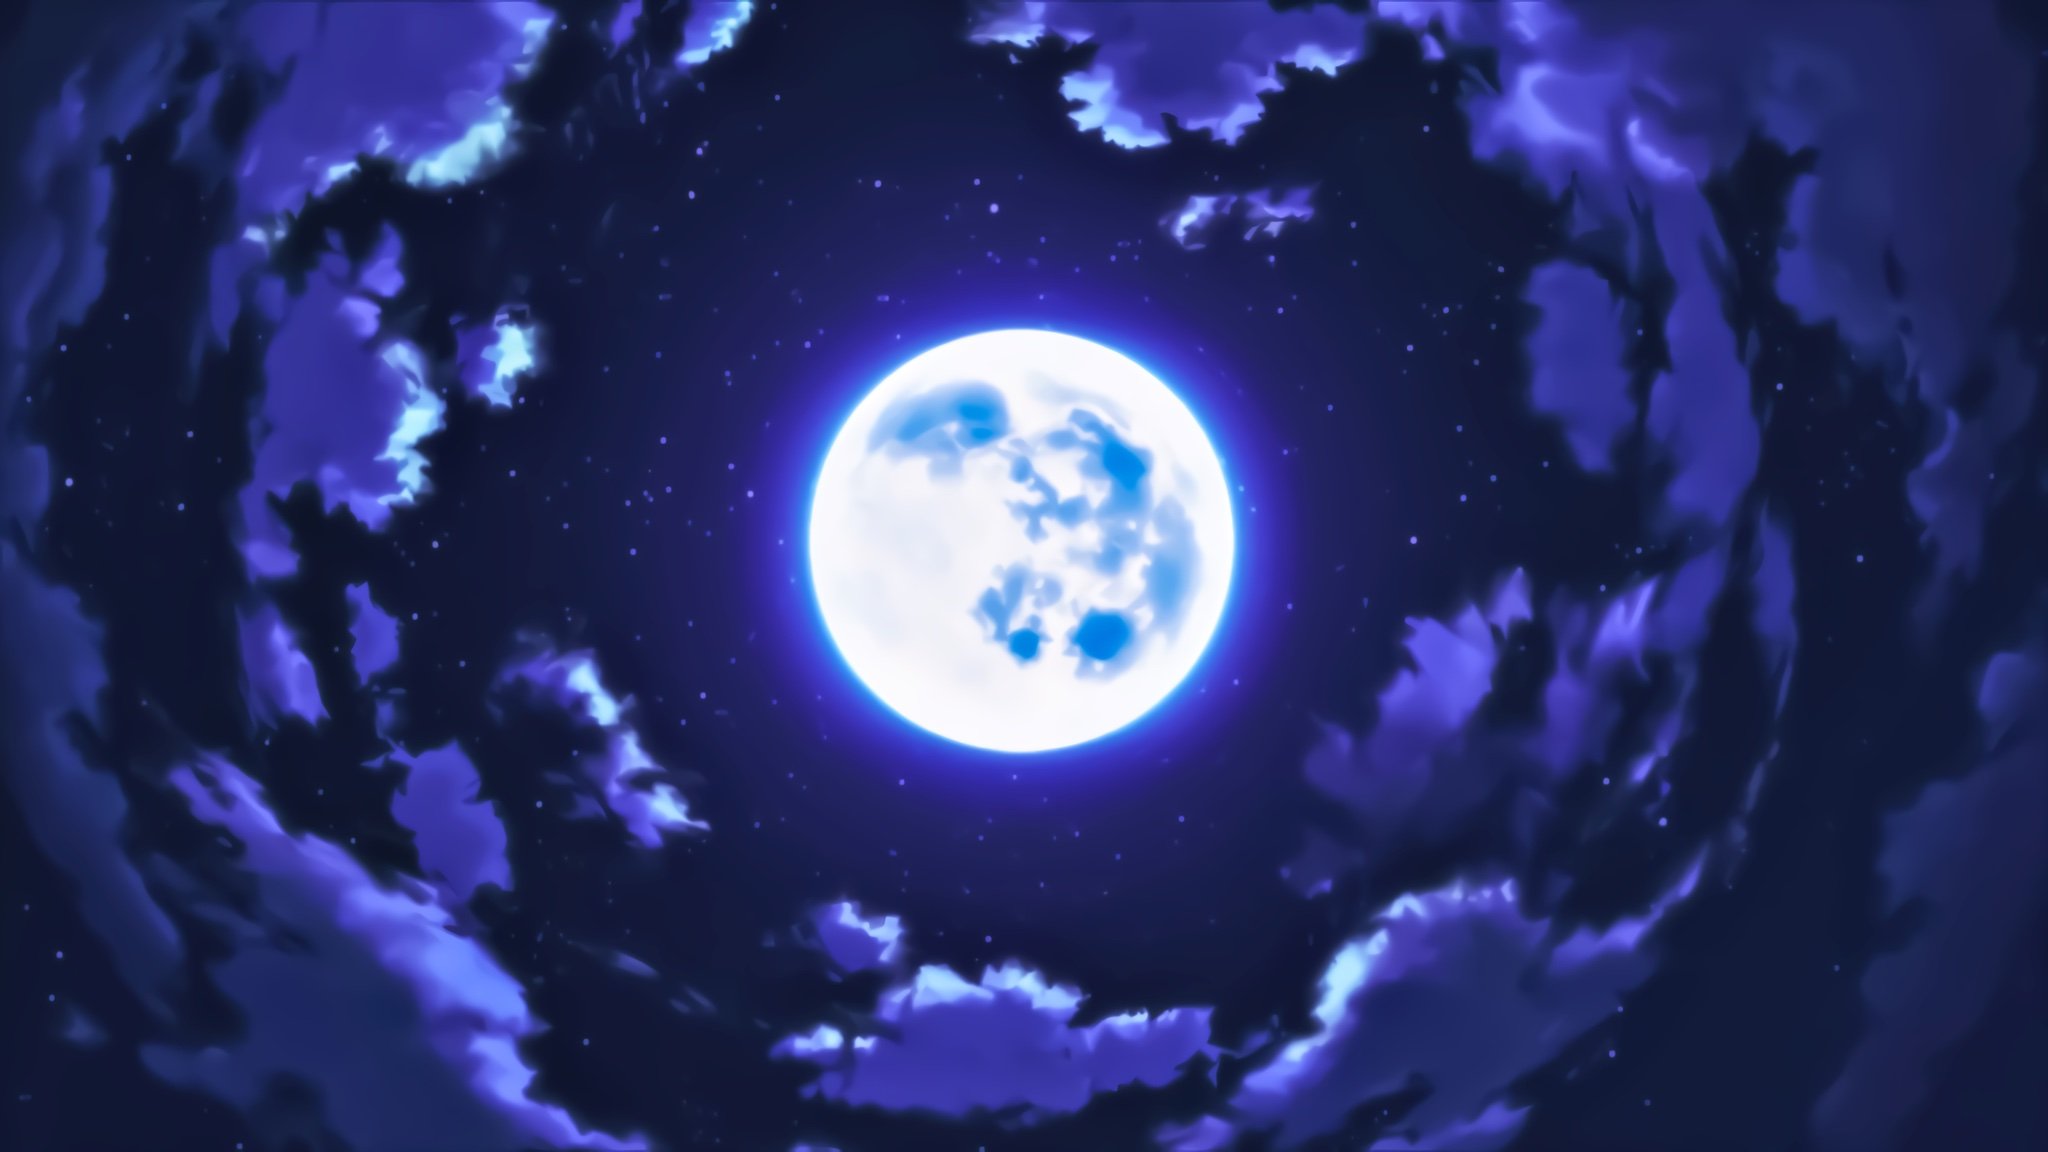 Nếu bạn là một fan Anime đích thực, đừng bỏ lỡ cơ hội để ngắm nhìn hình ảnh của mặt trăng trong Anime, khi ánh sáng lấp lánh và tạo nên không gian đầy bí ẩn. Còn chần chừ gì nữa, hãy xem ngay!